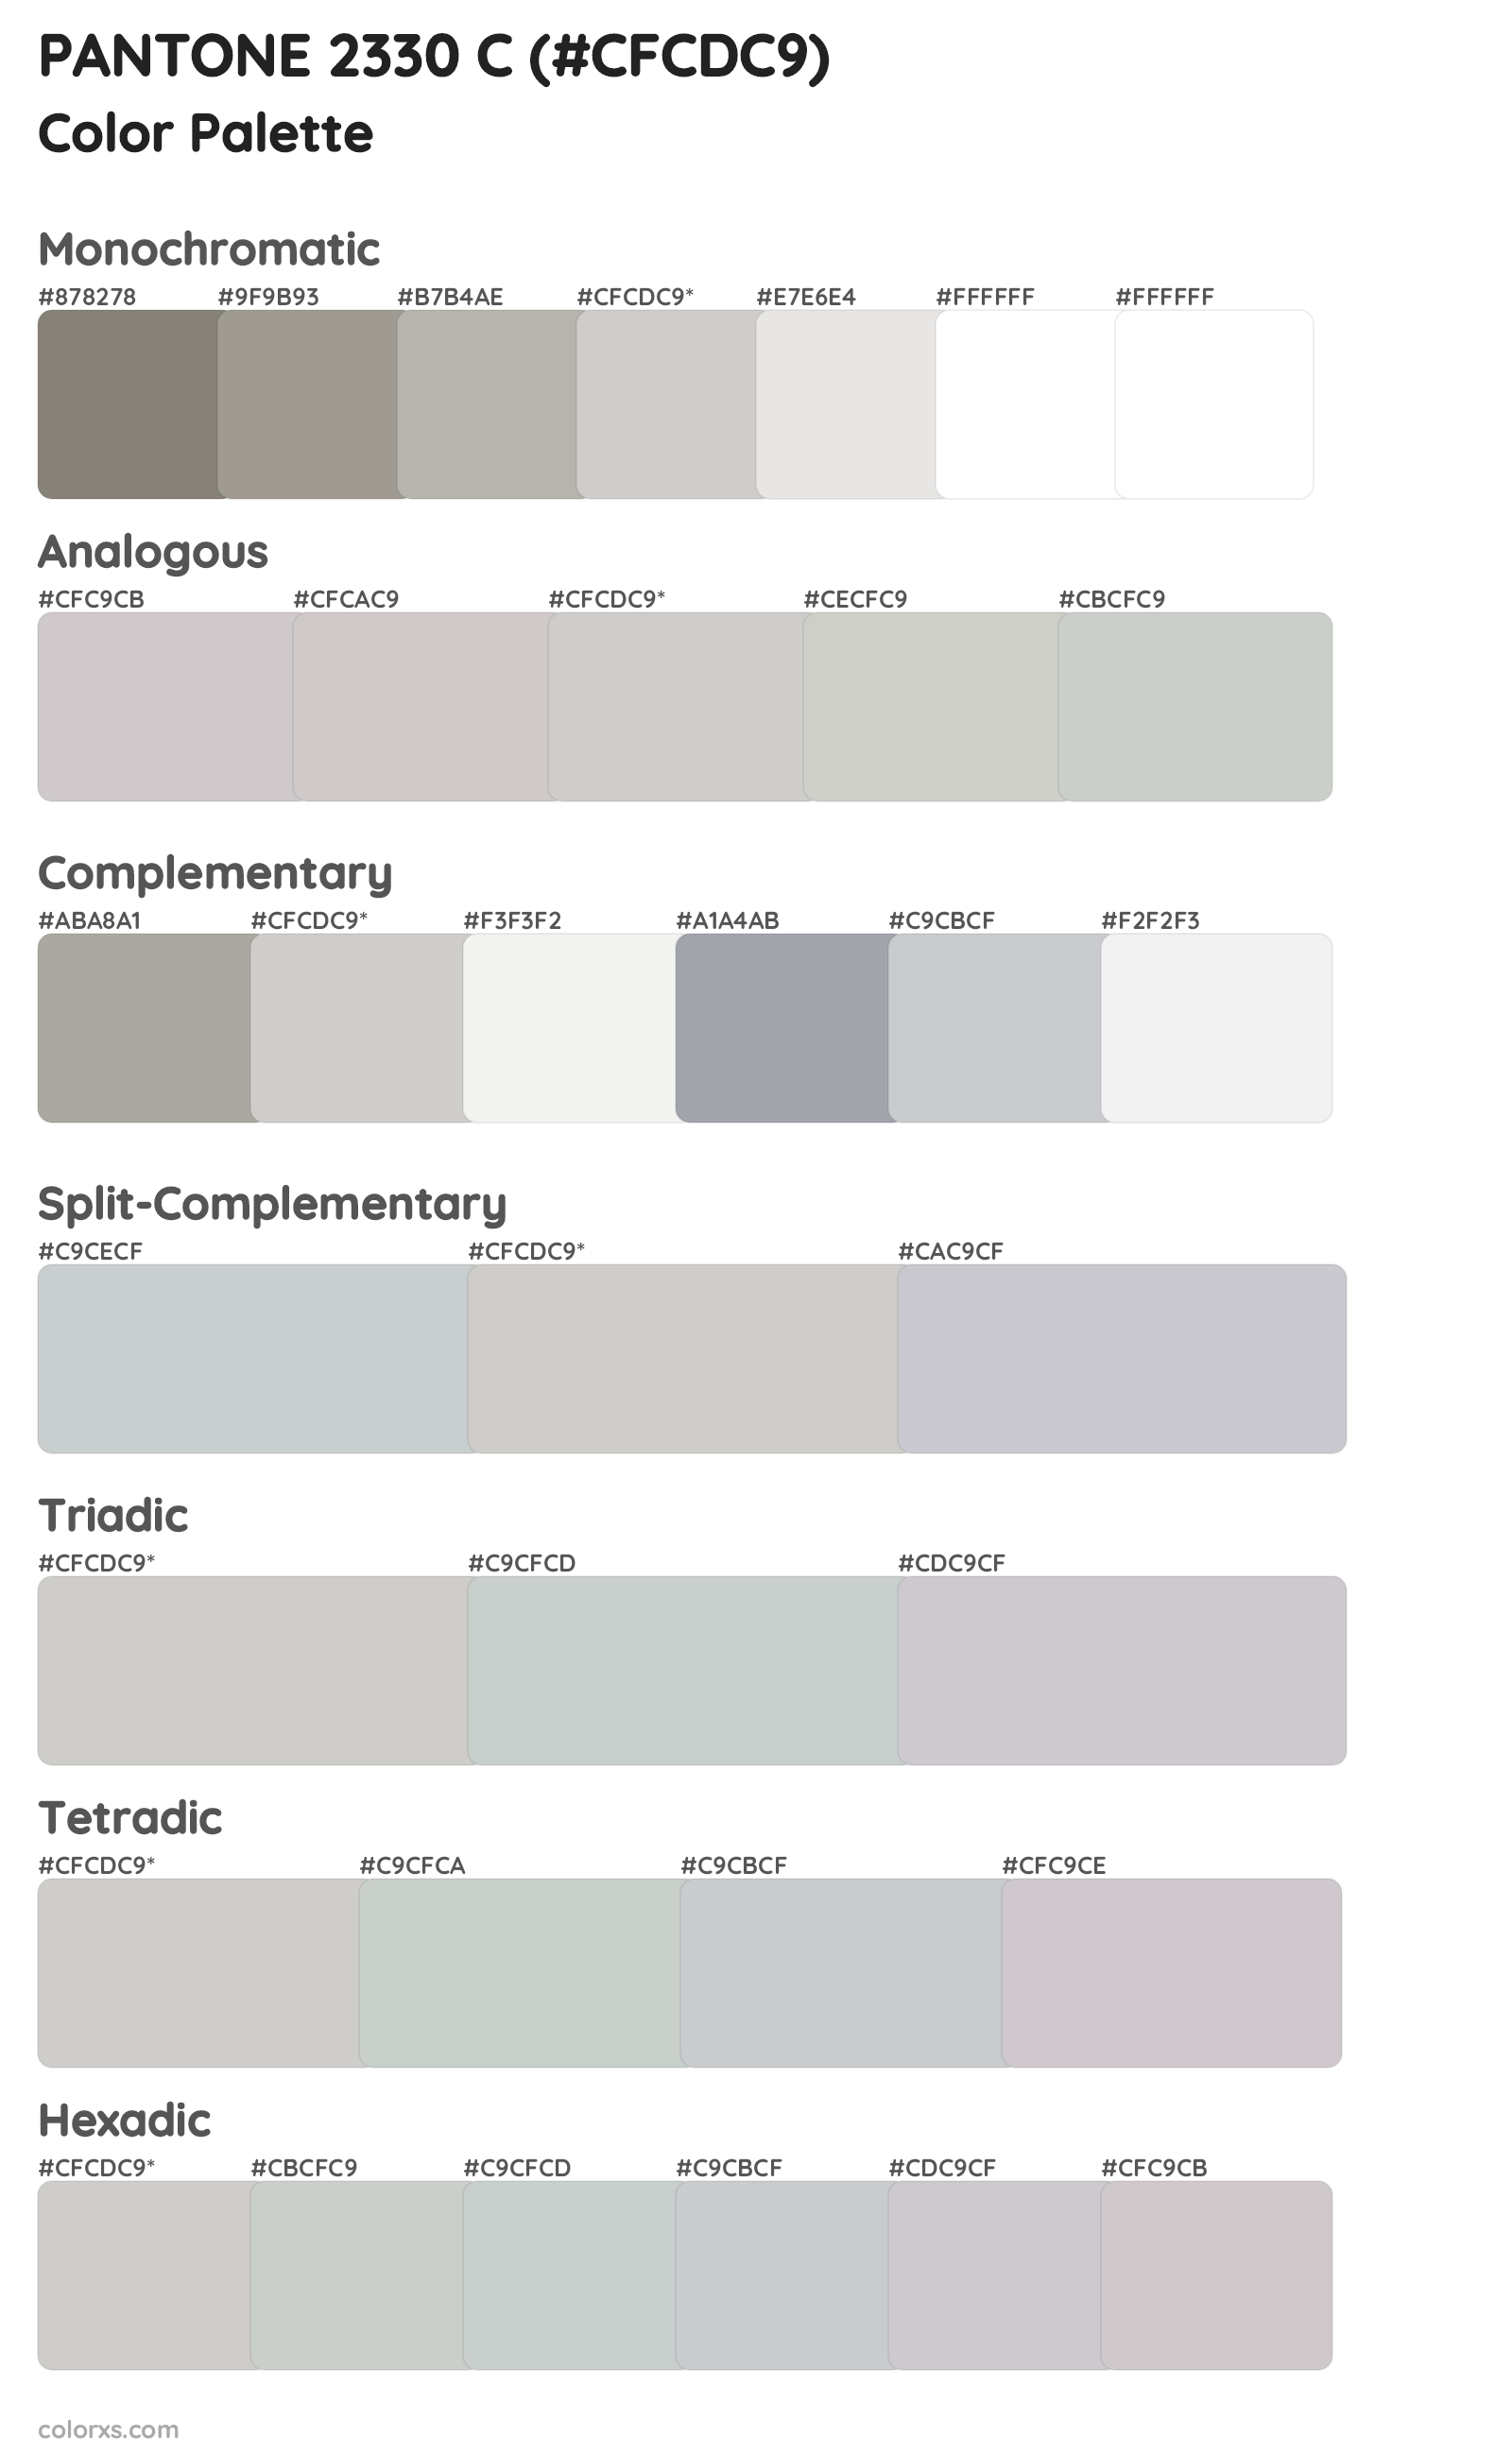 PANTONE 2330 C Color Scheme Palettes